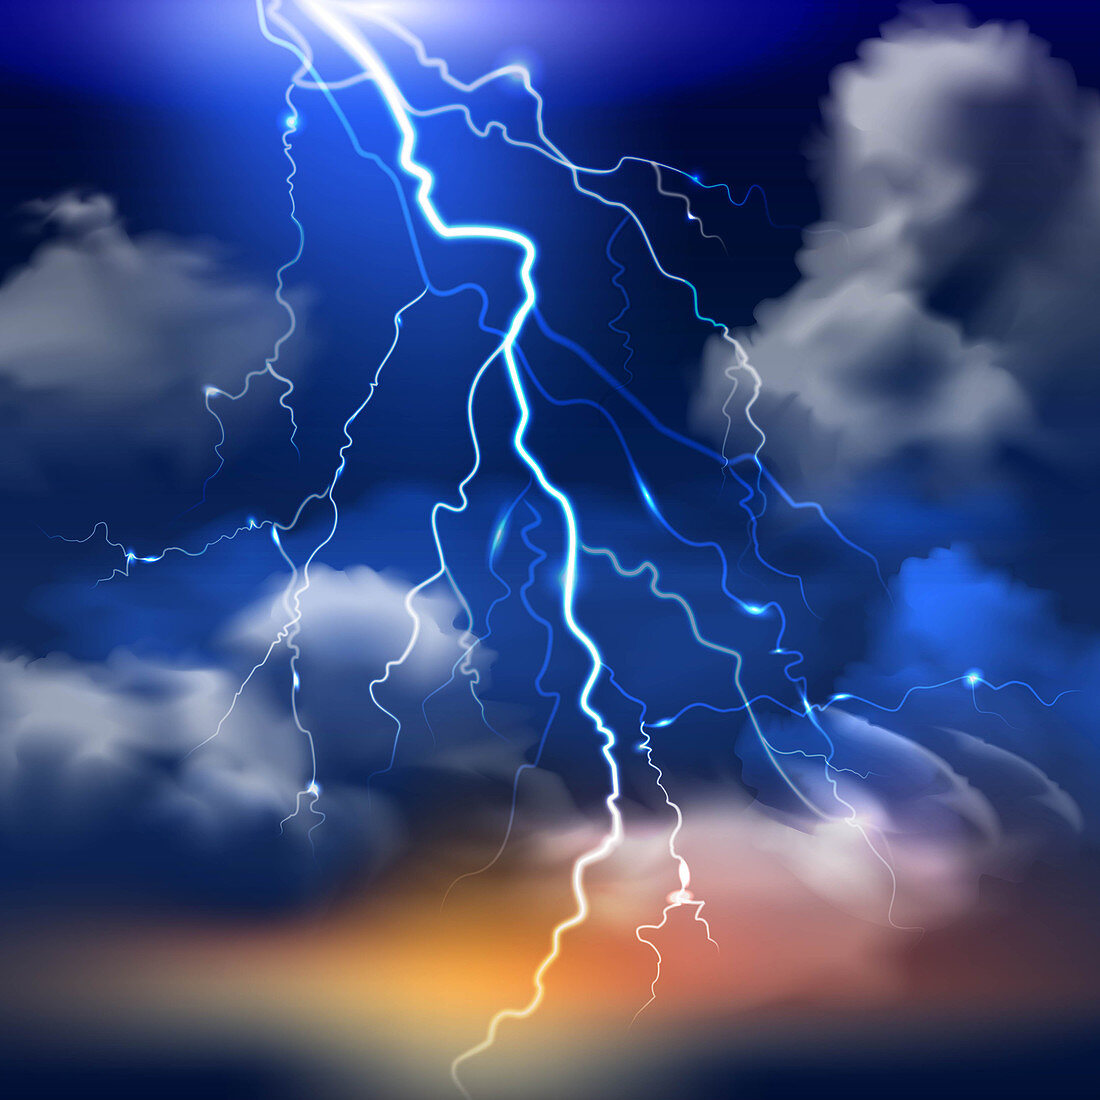 Lightning, illustration